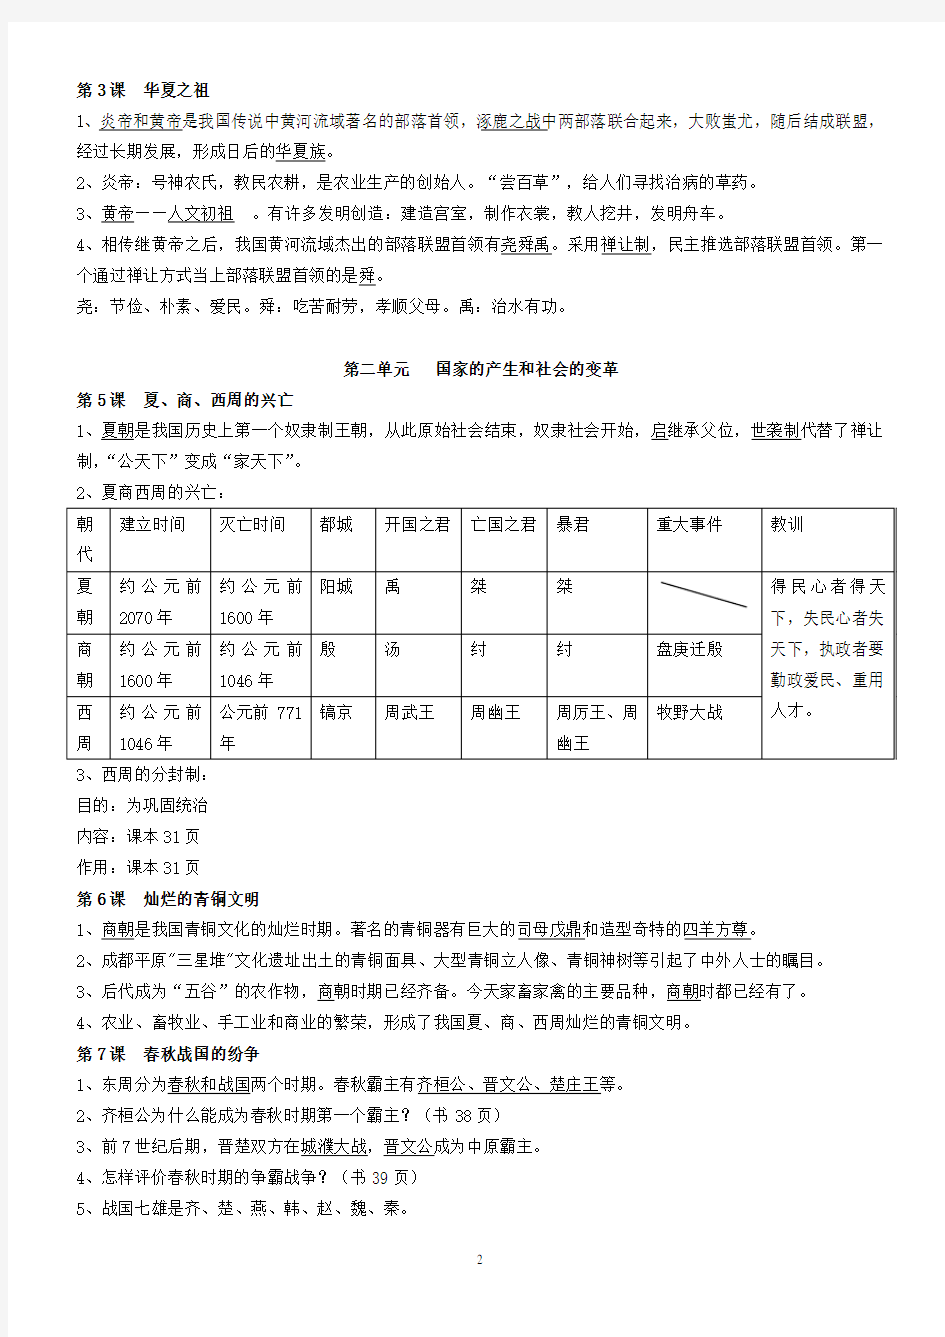 鲁教版中国历史复习提纲(六年级上册)